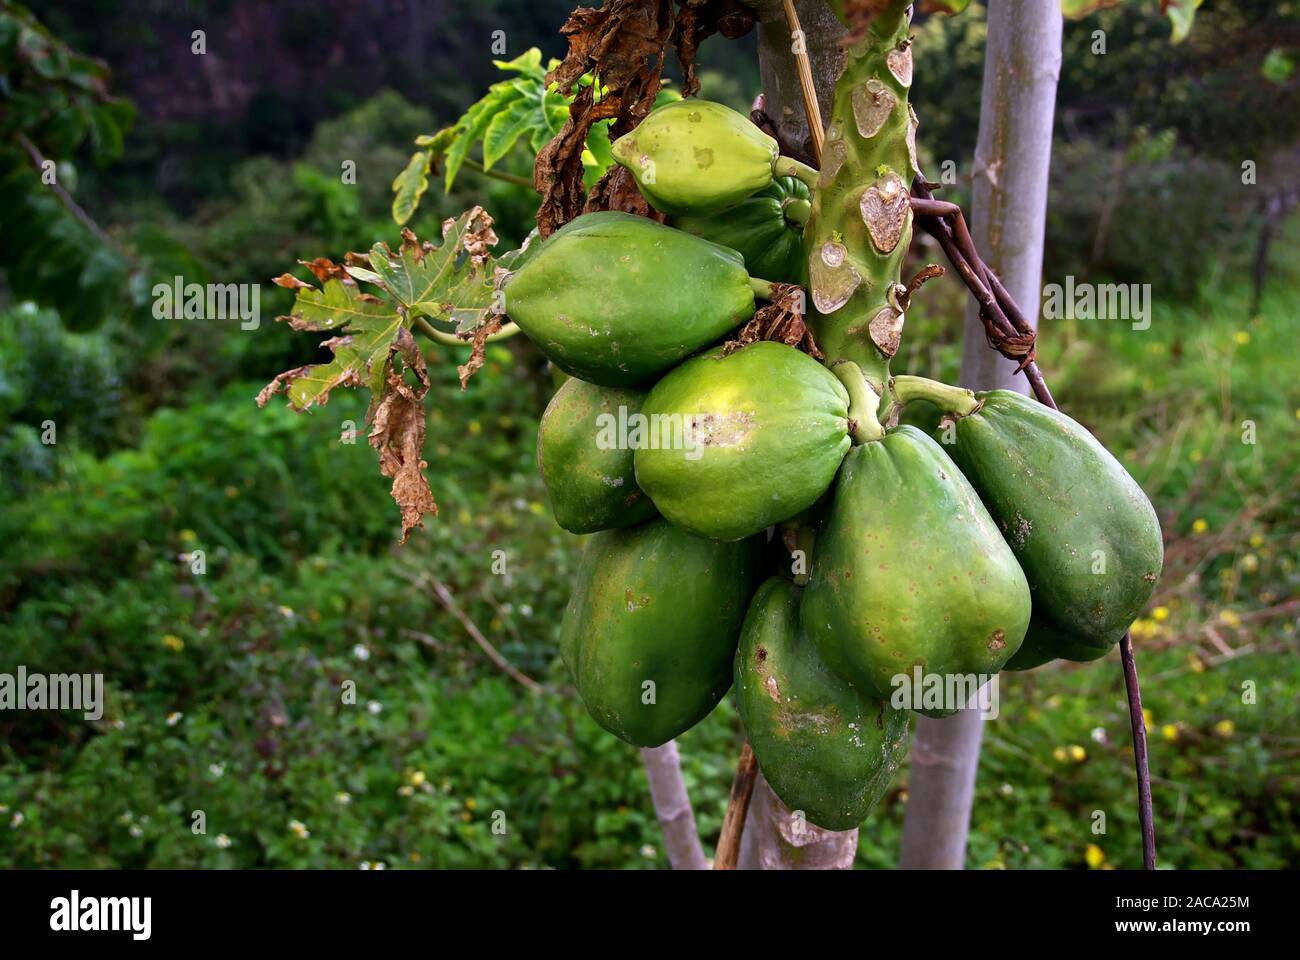 carica papaya - Papayabaum Stock Photo